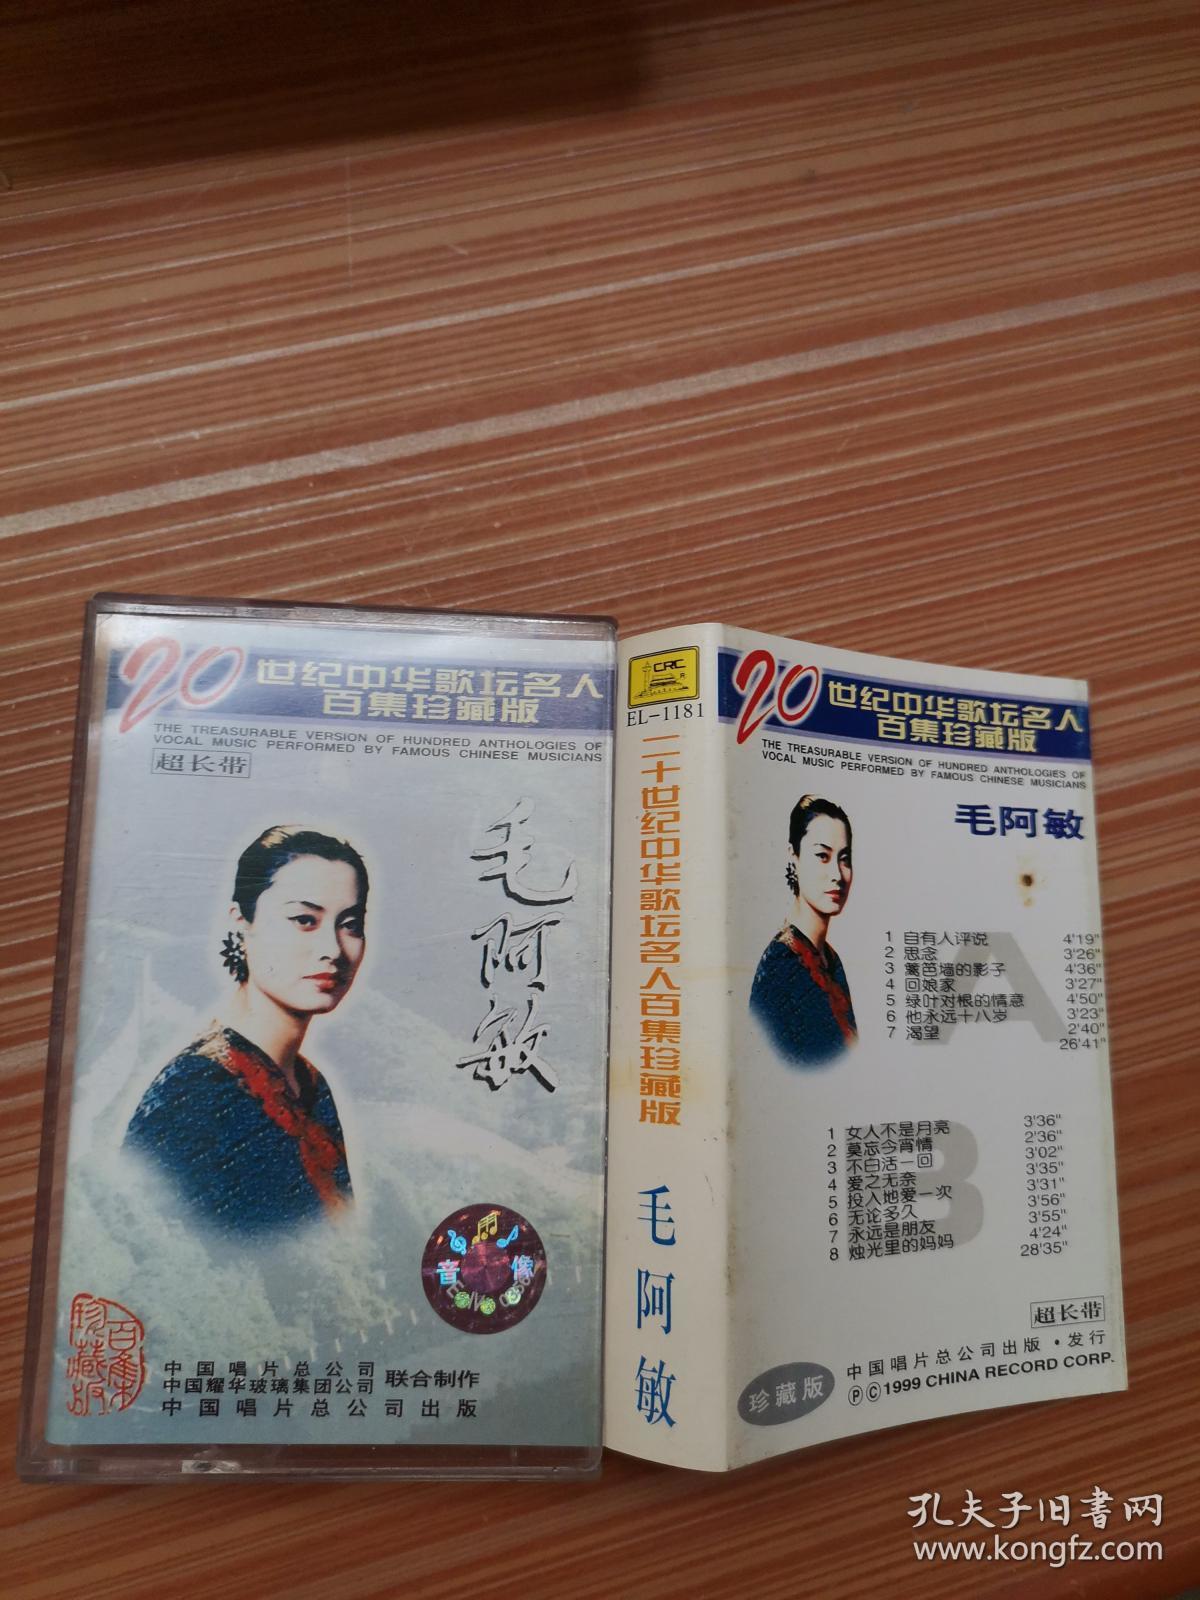 二十世纪中华歌坛名人百集珍藏版   毛阿敏    磁带